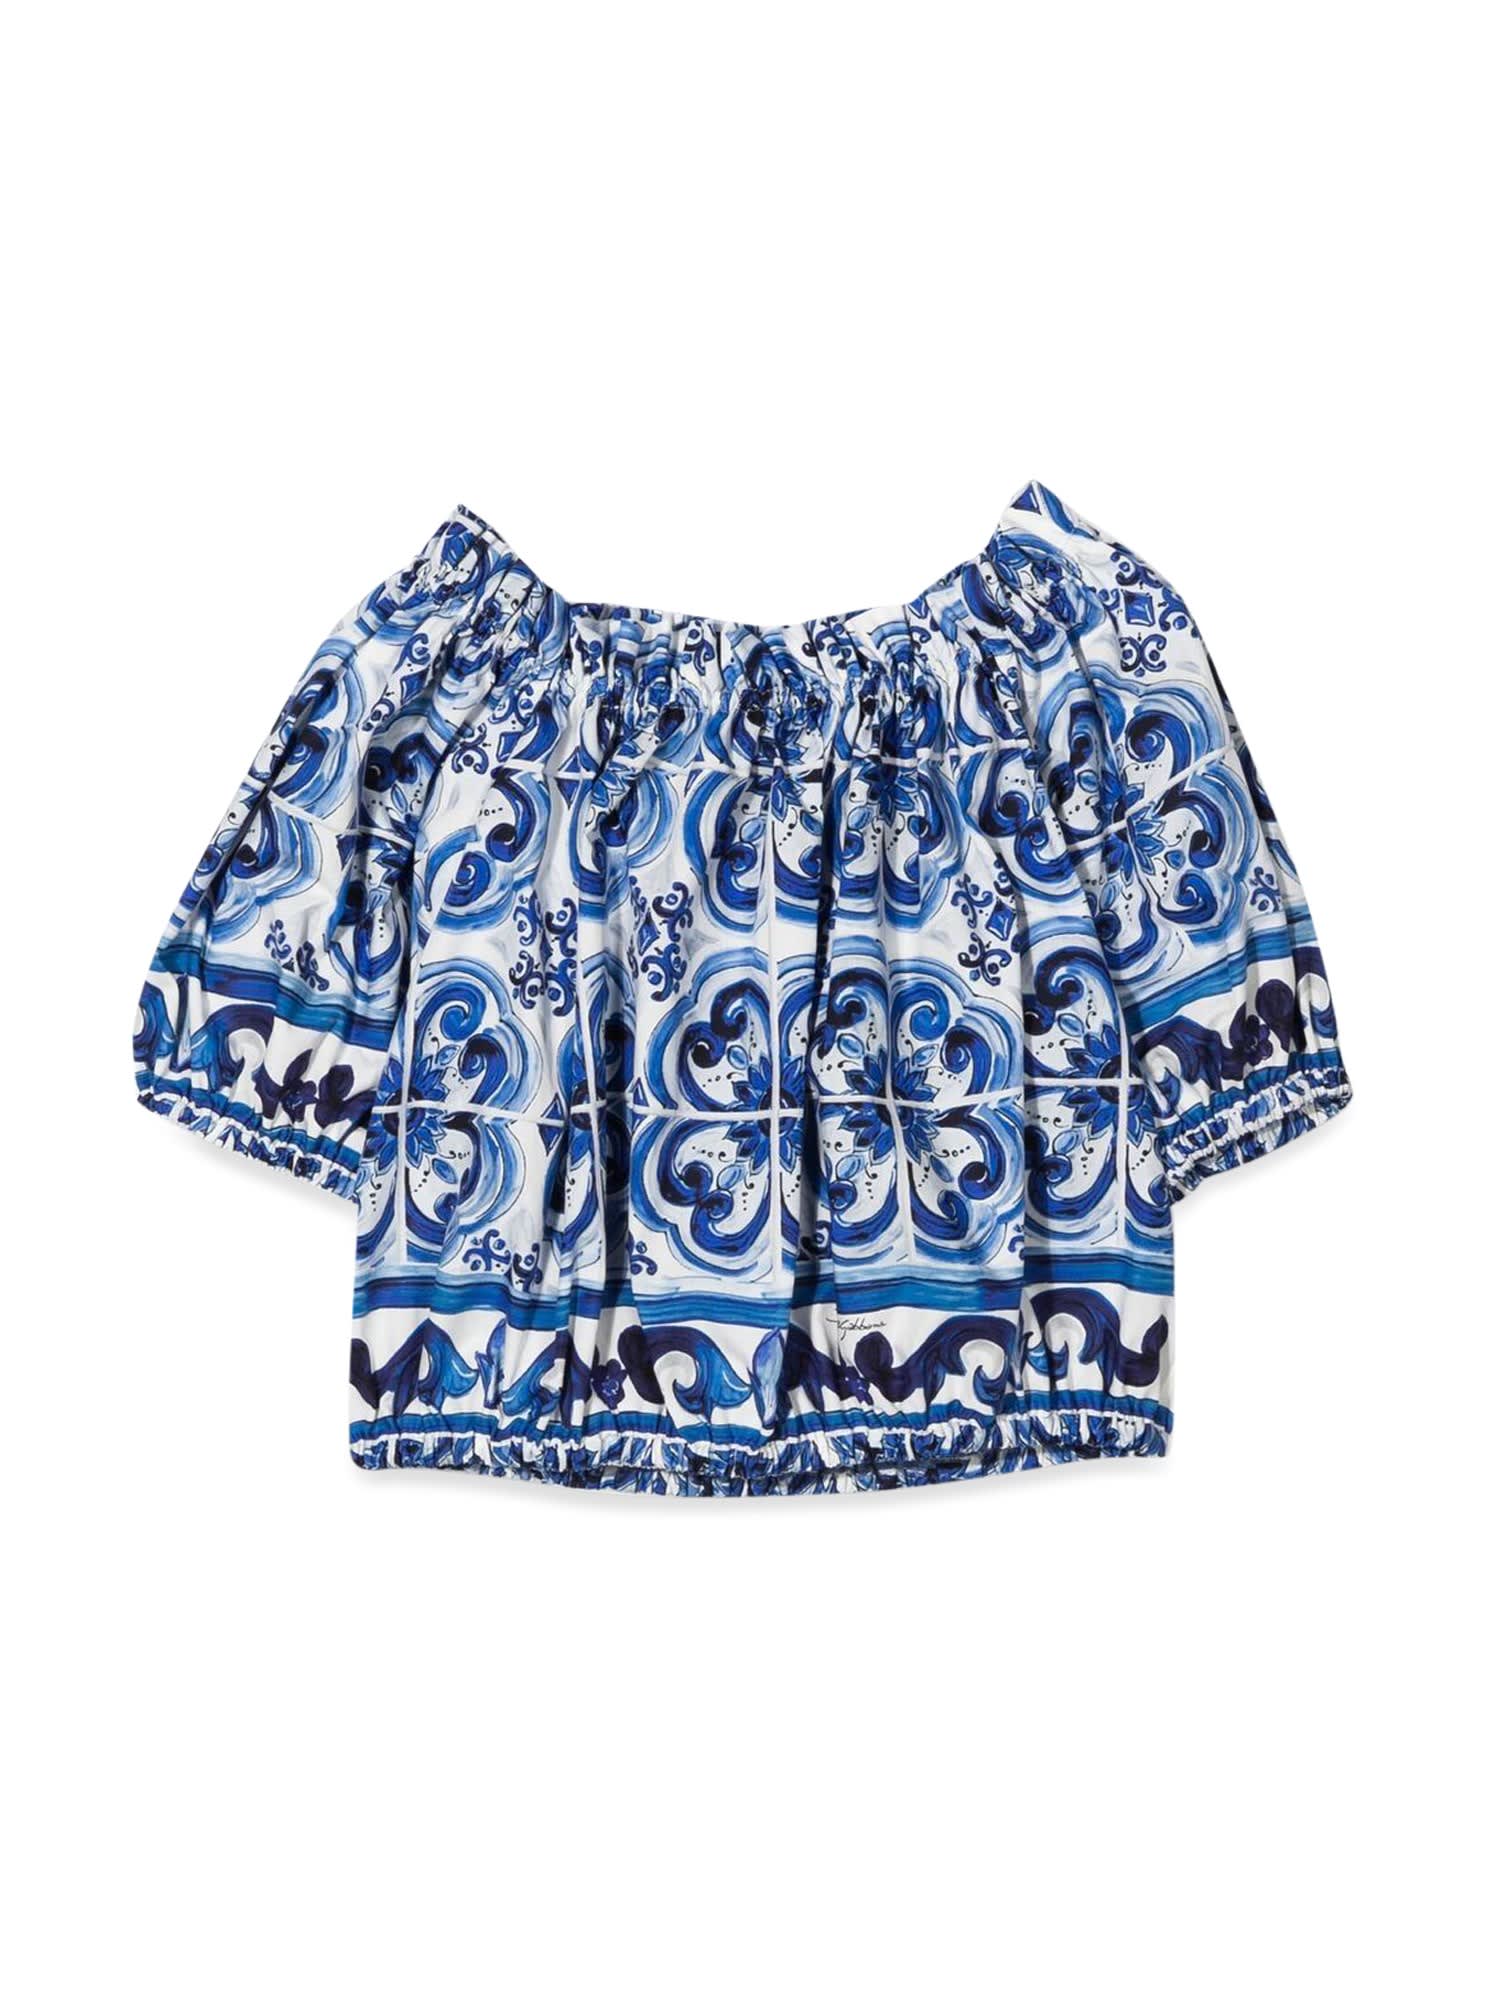 Dolce & Gabbana Girls Floral Jacket Denim Girls Kids 5 Year Blue by Childrensalon